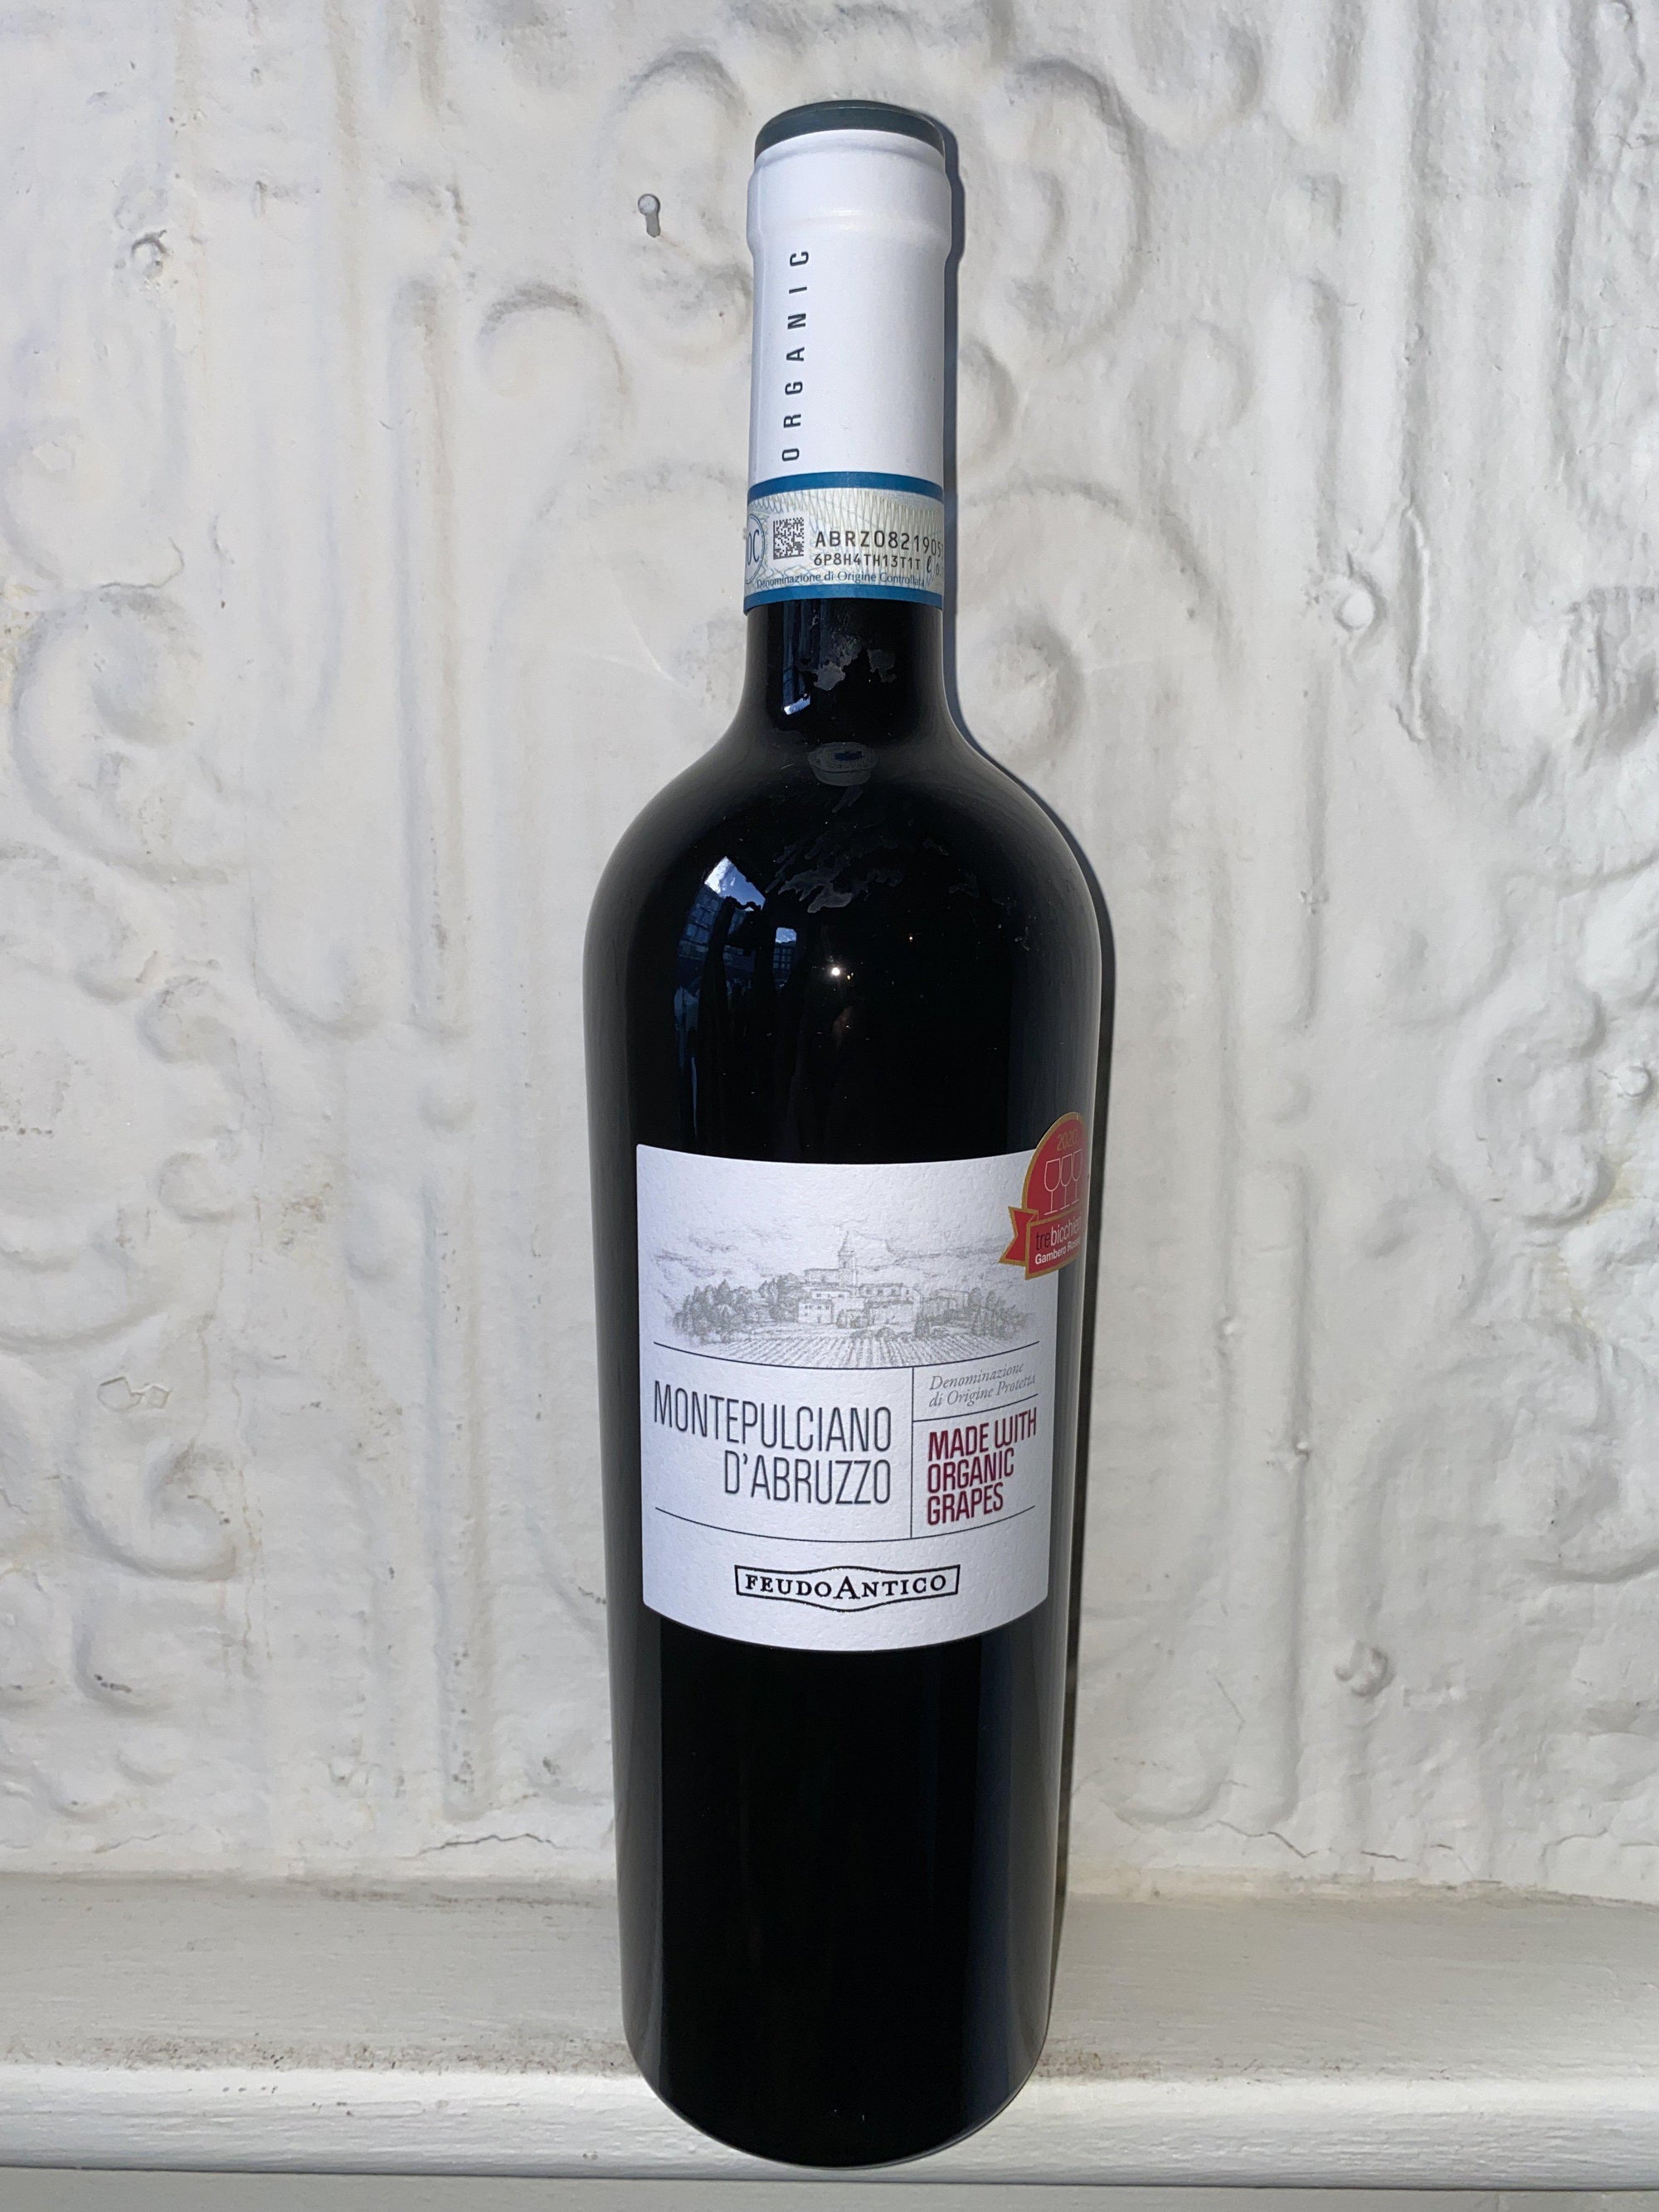 Montepulciano d'Abruzzo Bio, Feudo Antico 2018 (Abruzzo, Italy)-Wine-Bibber & Bell